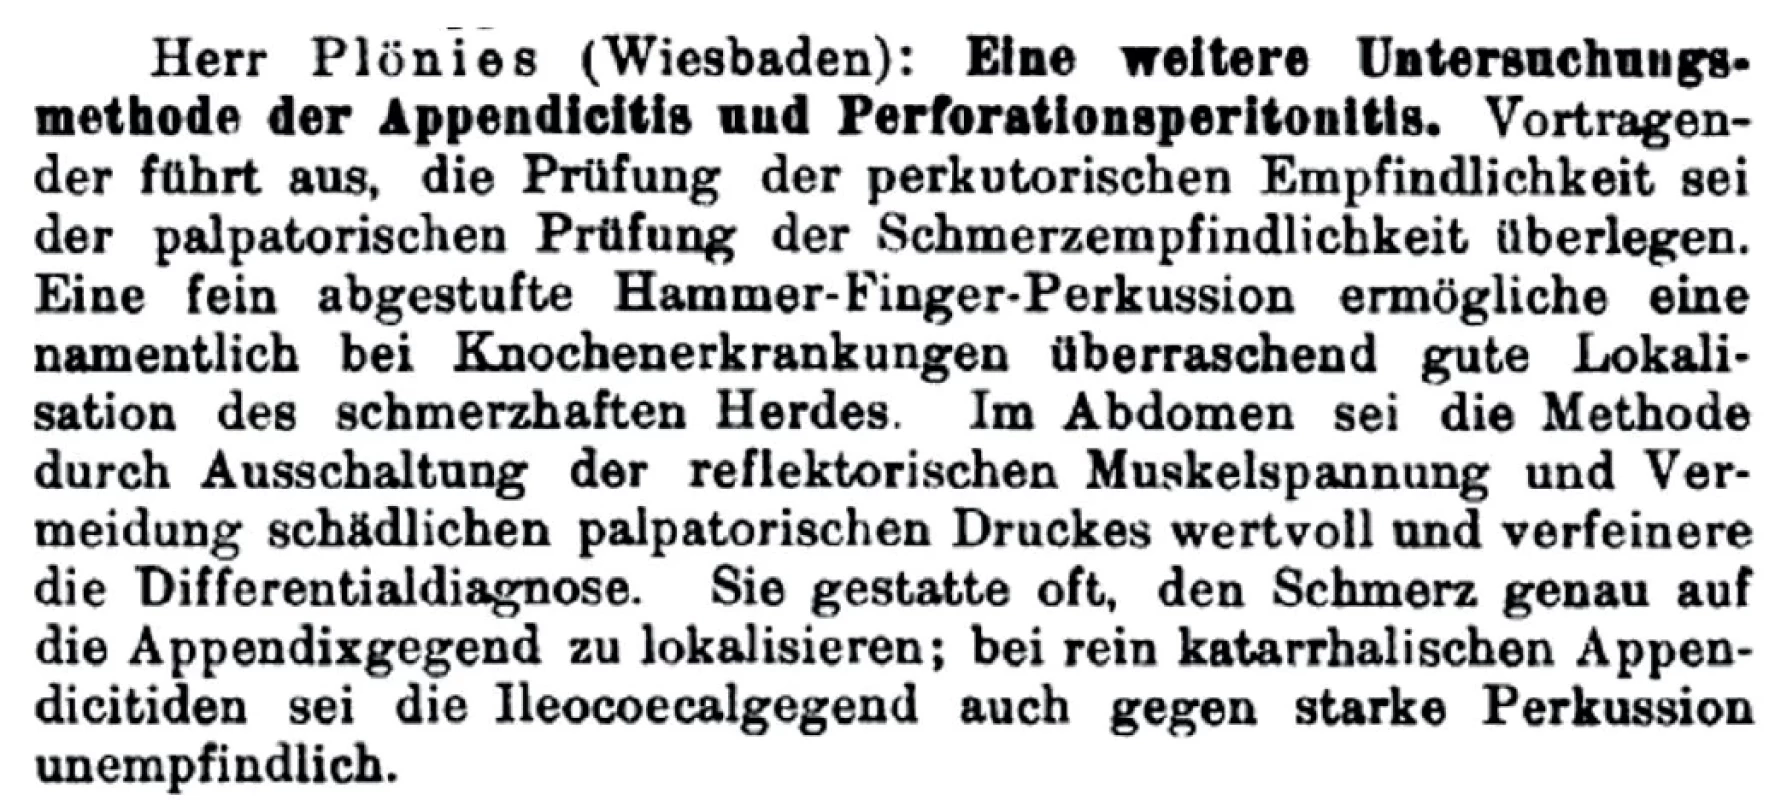 Souhrnná zpráva o obsahu přednášky dr. Plöniese z Deutsche medizinische Wochenschrift (1905)